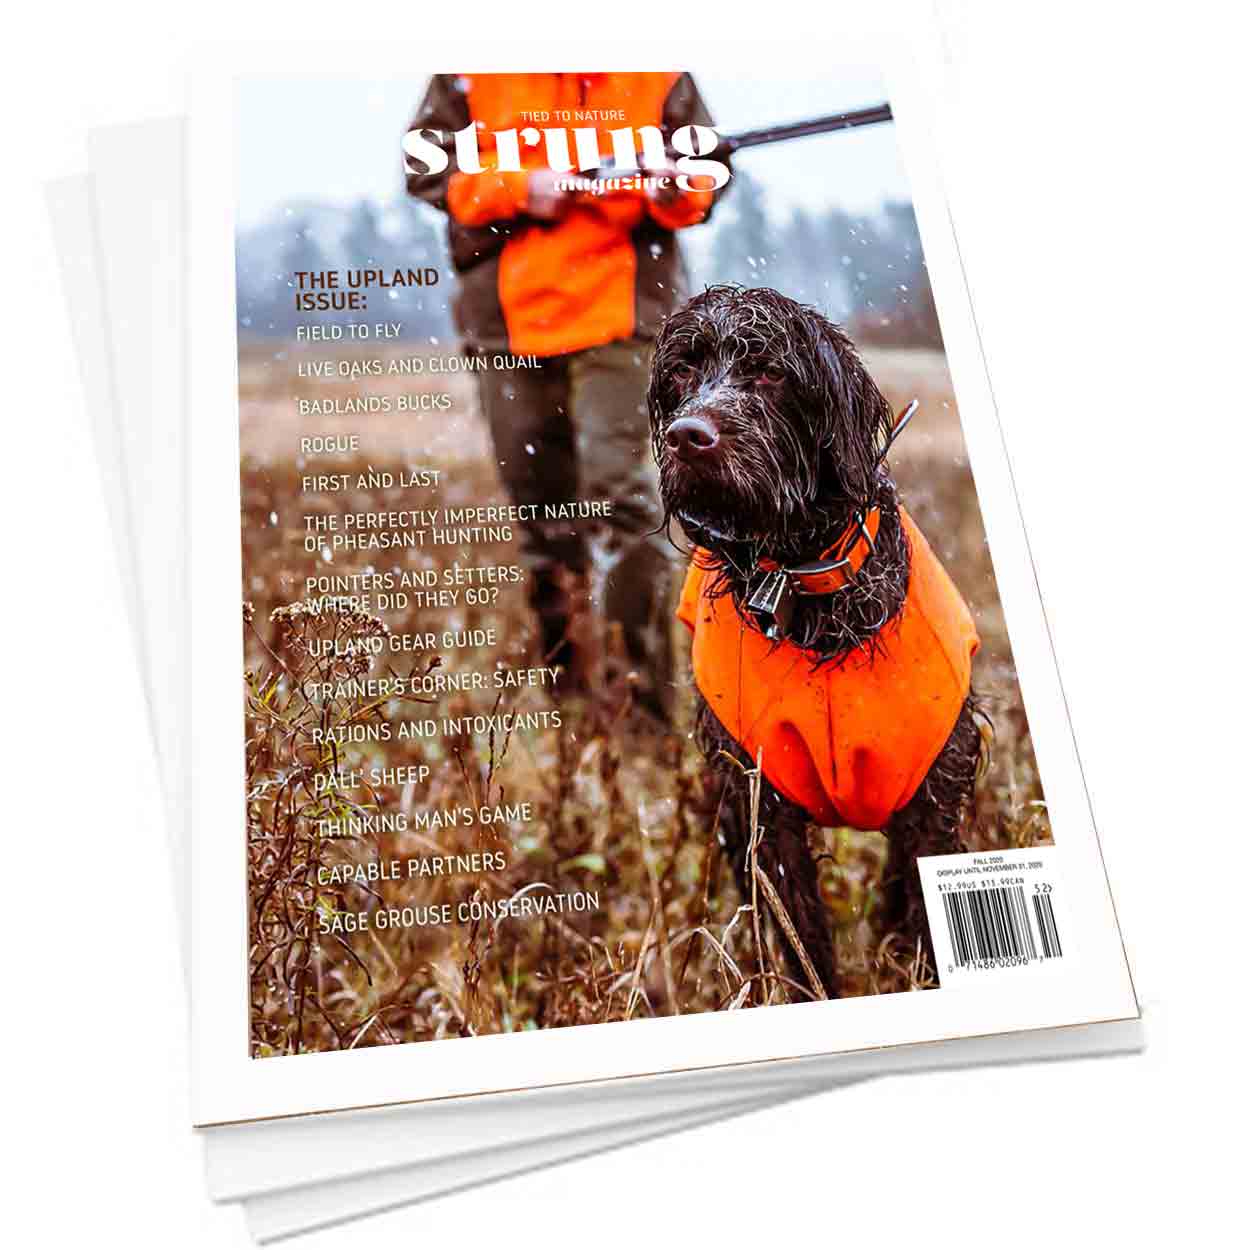 upland magazine - Strung Magazine the upland issue